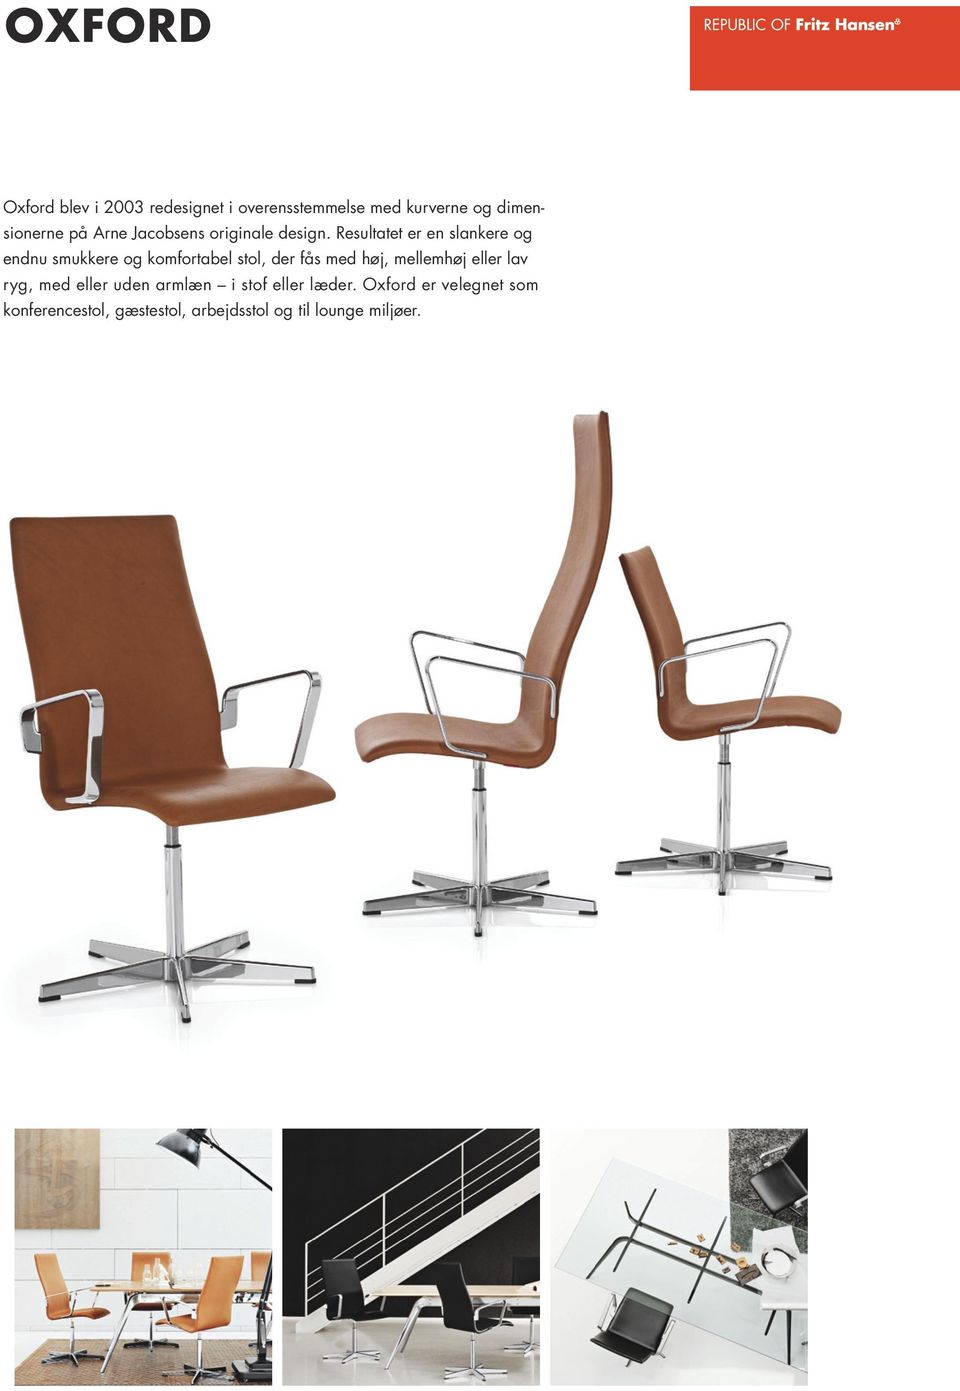 stol, der fås med høj, mellemhøj eller lav ryg, med eller uden armlæn i stof eller